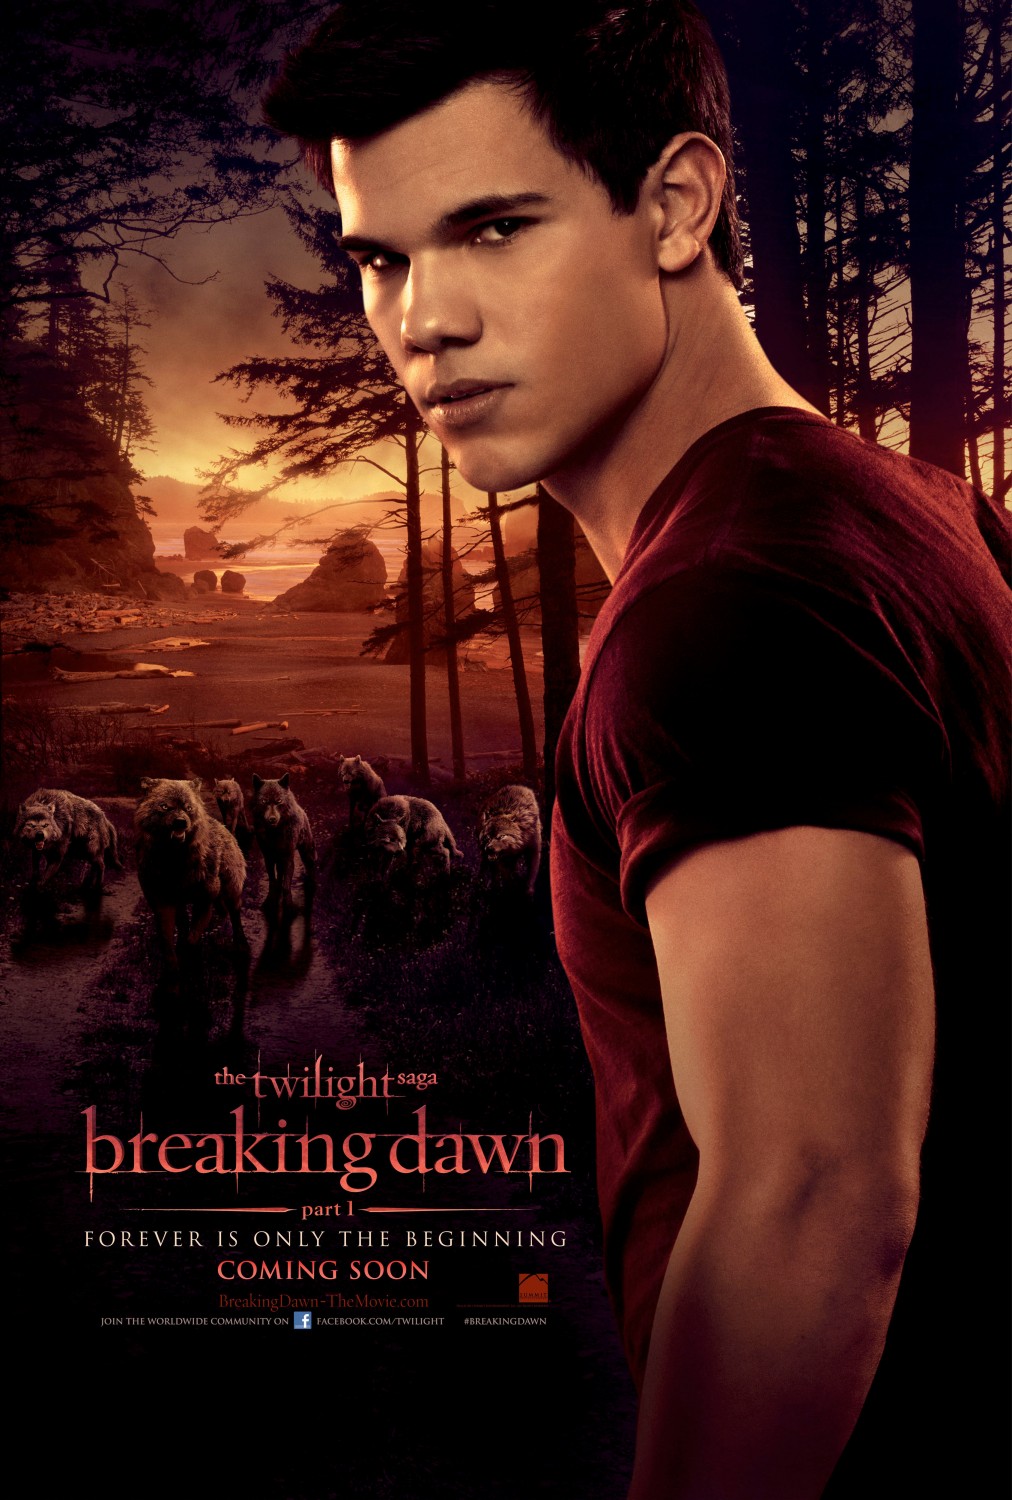 Twilight breaking dawn 3